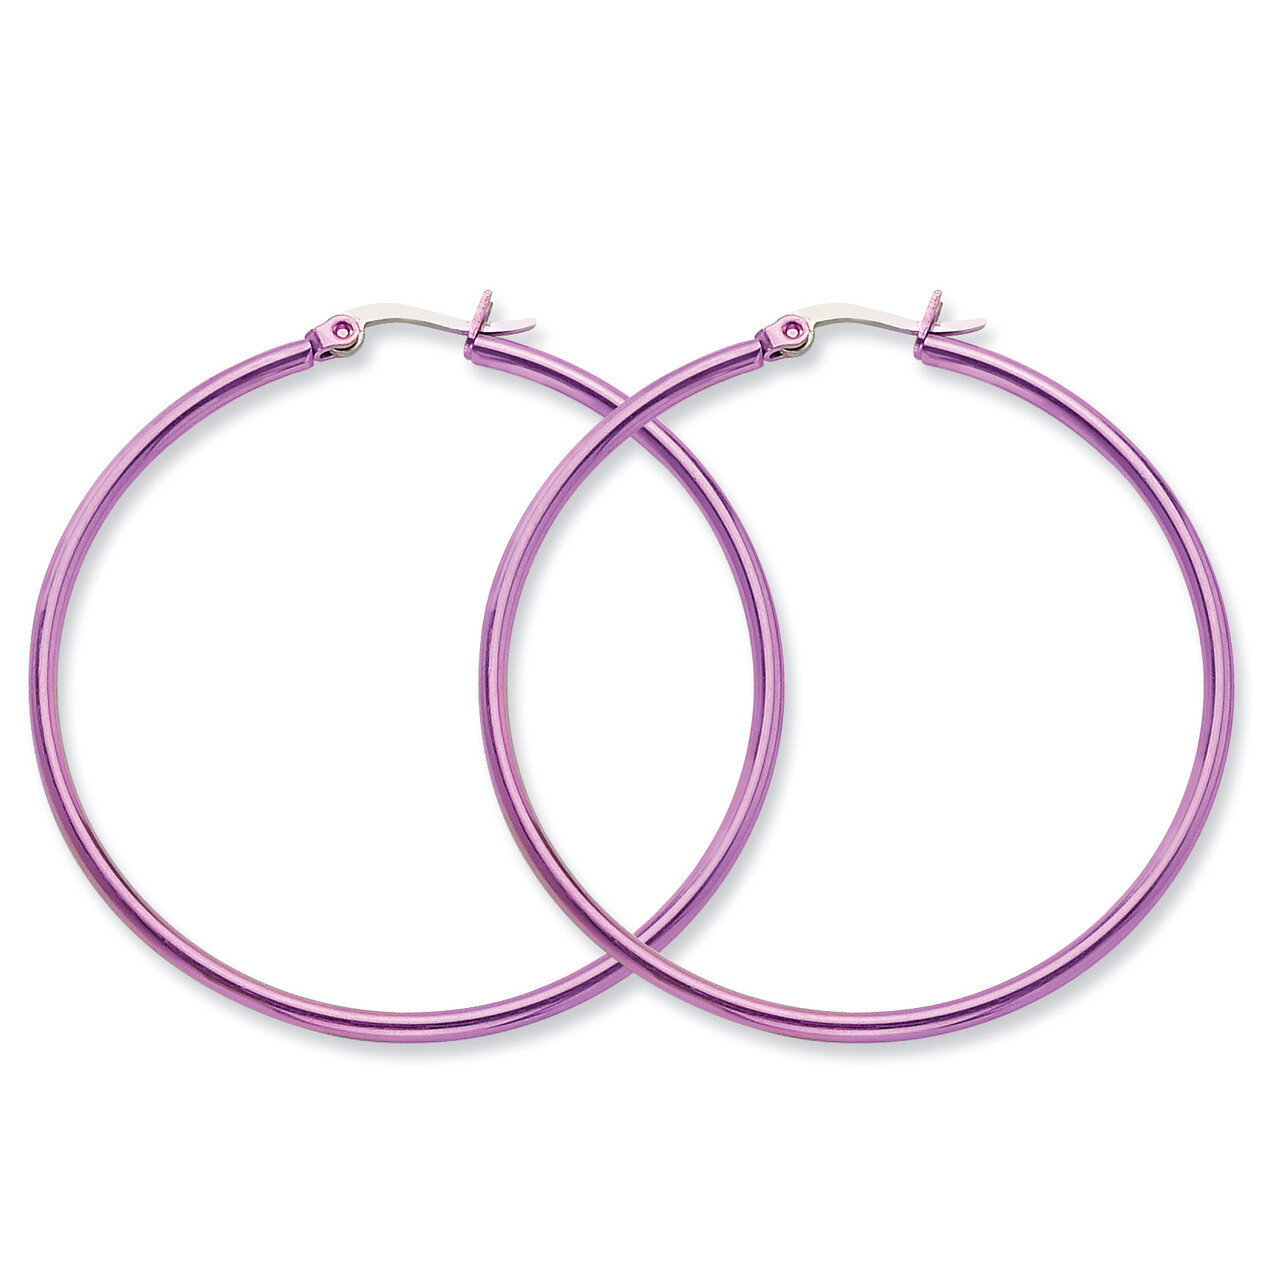 Pink IP plated 48mm Hoop Earrings - Stainless Steel SRE434